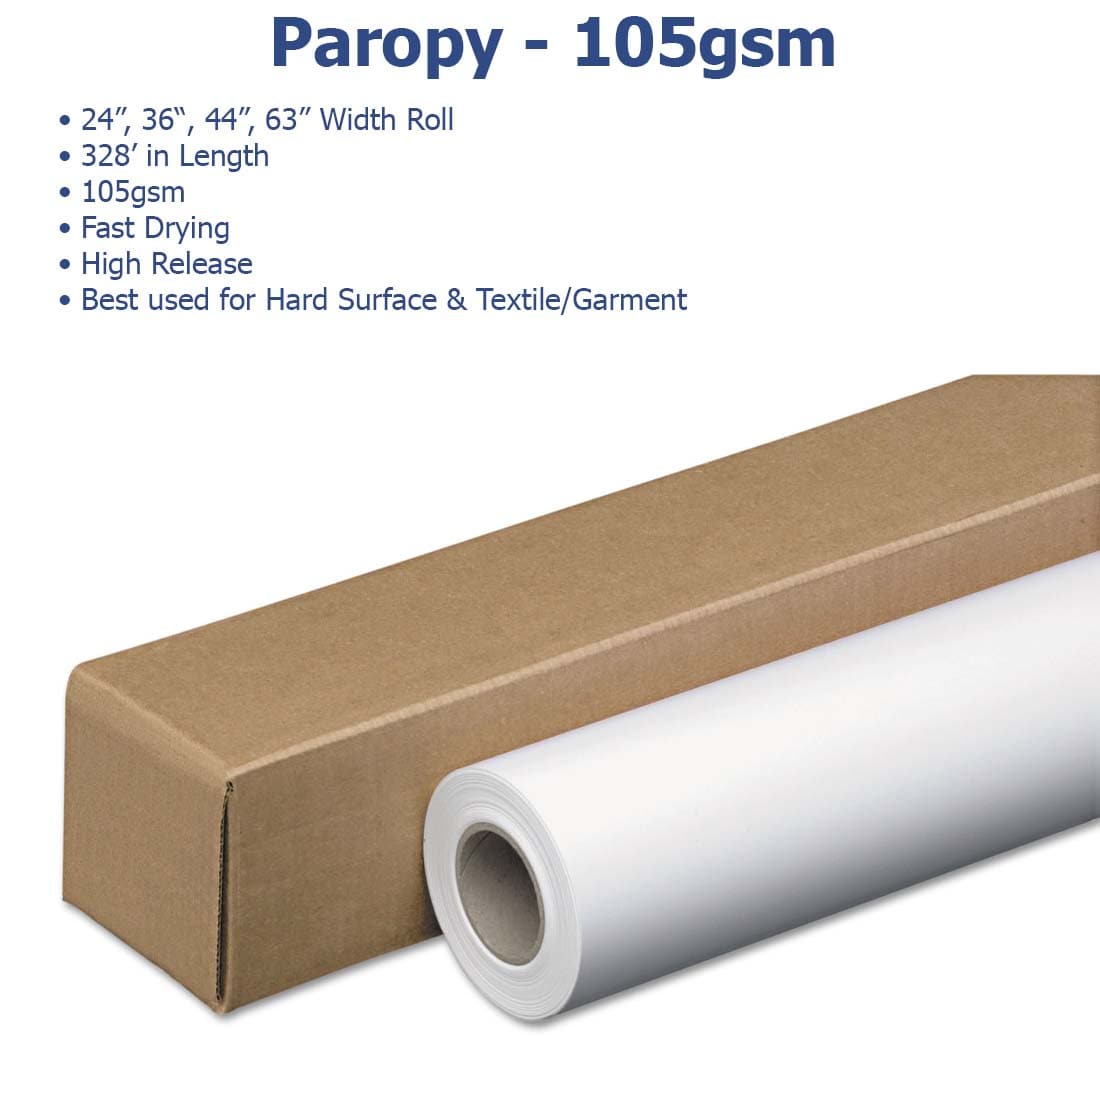 Paropy™ Sublimation Paper - 105gsm - Joto Imaging Supplies US